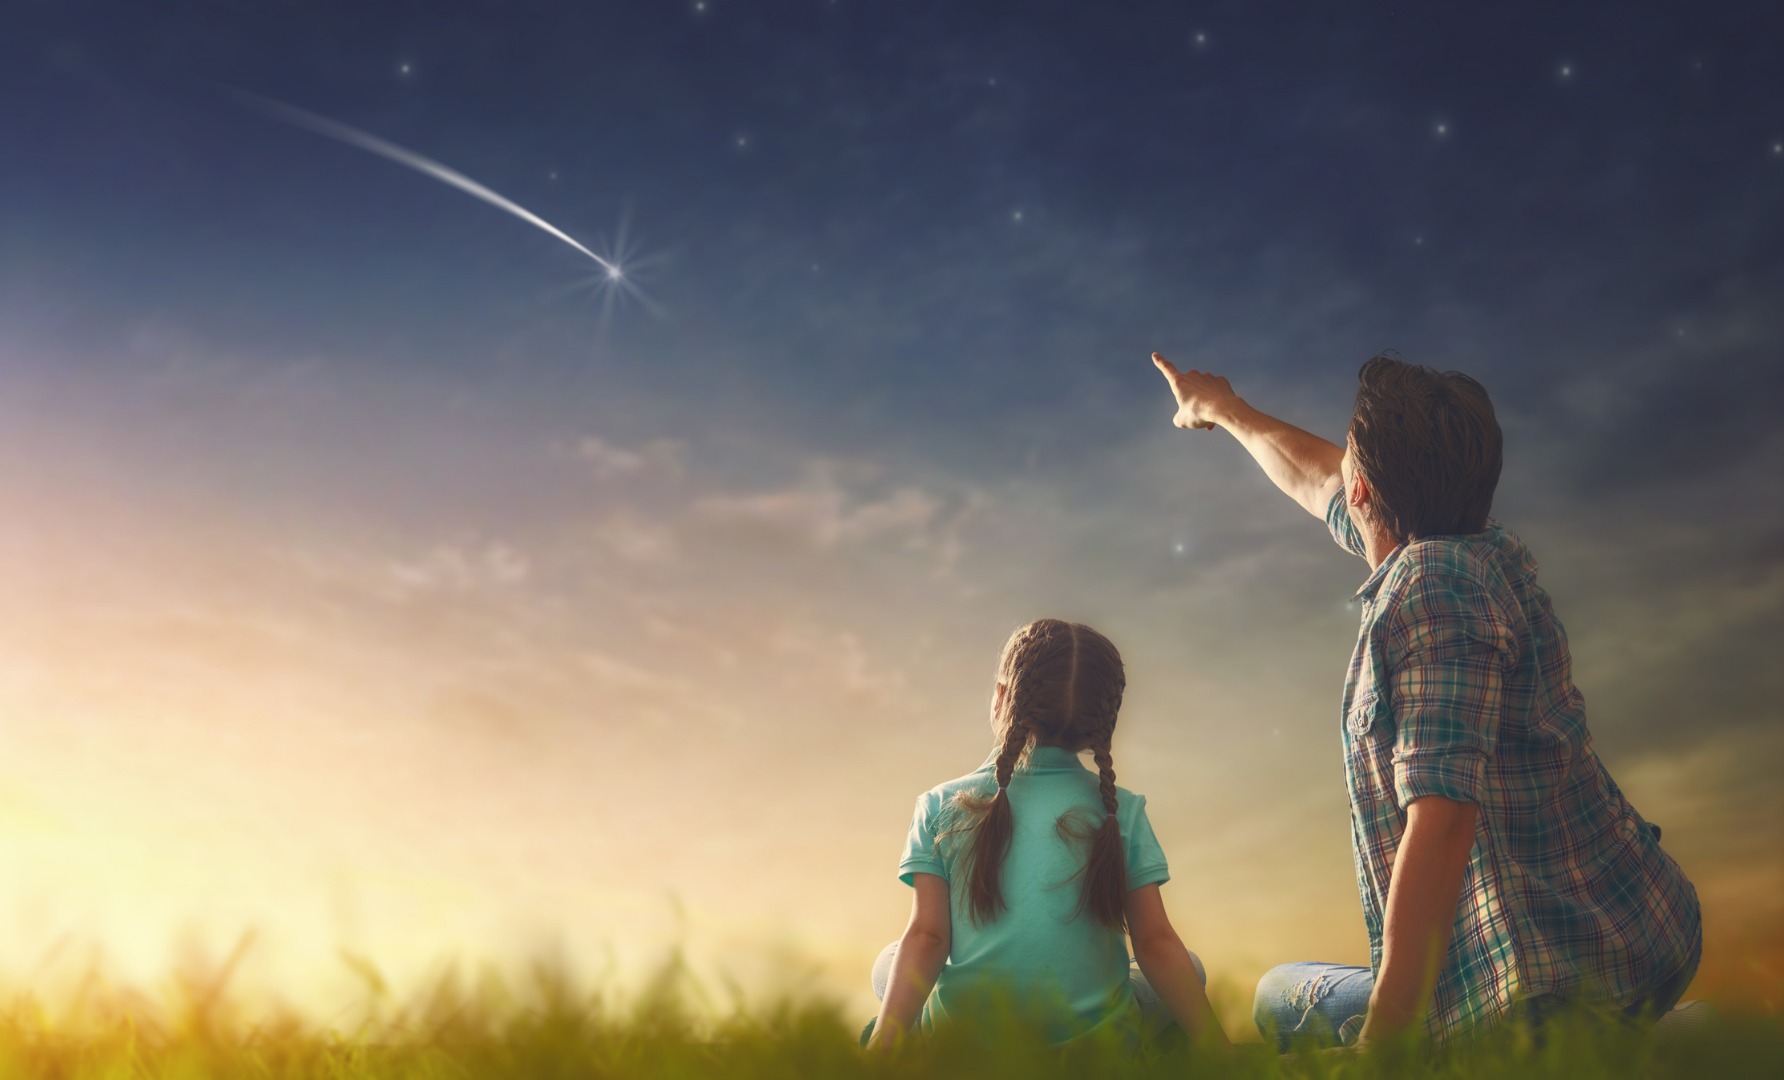 Фото №1 - Тайны звезд: знакомим малыша с астрономией